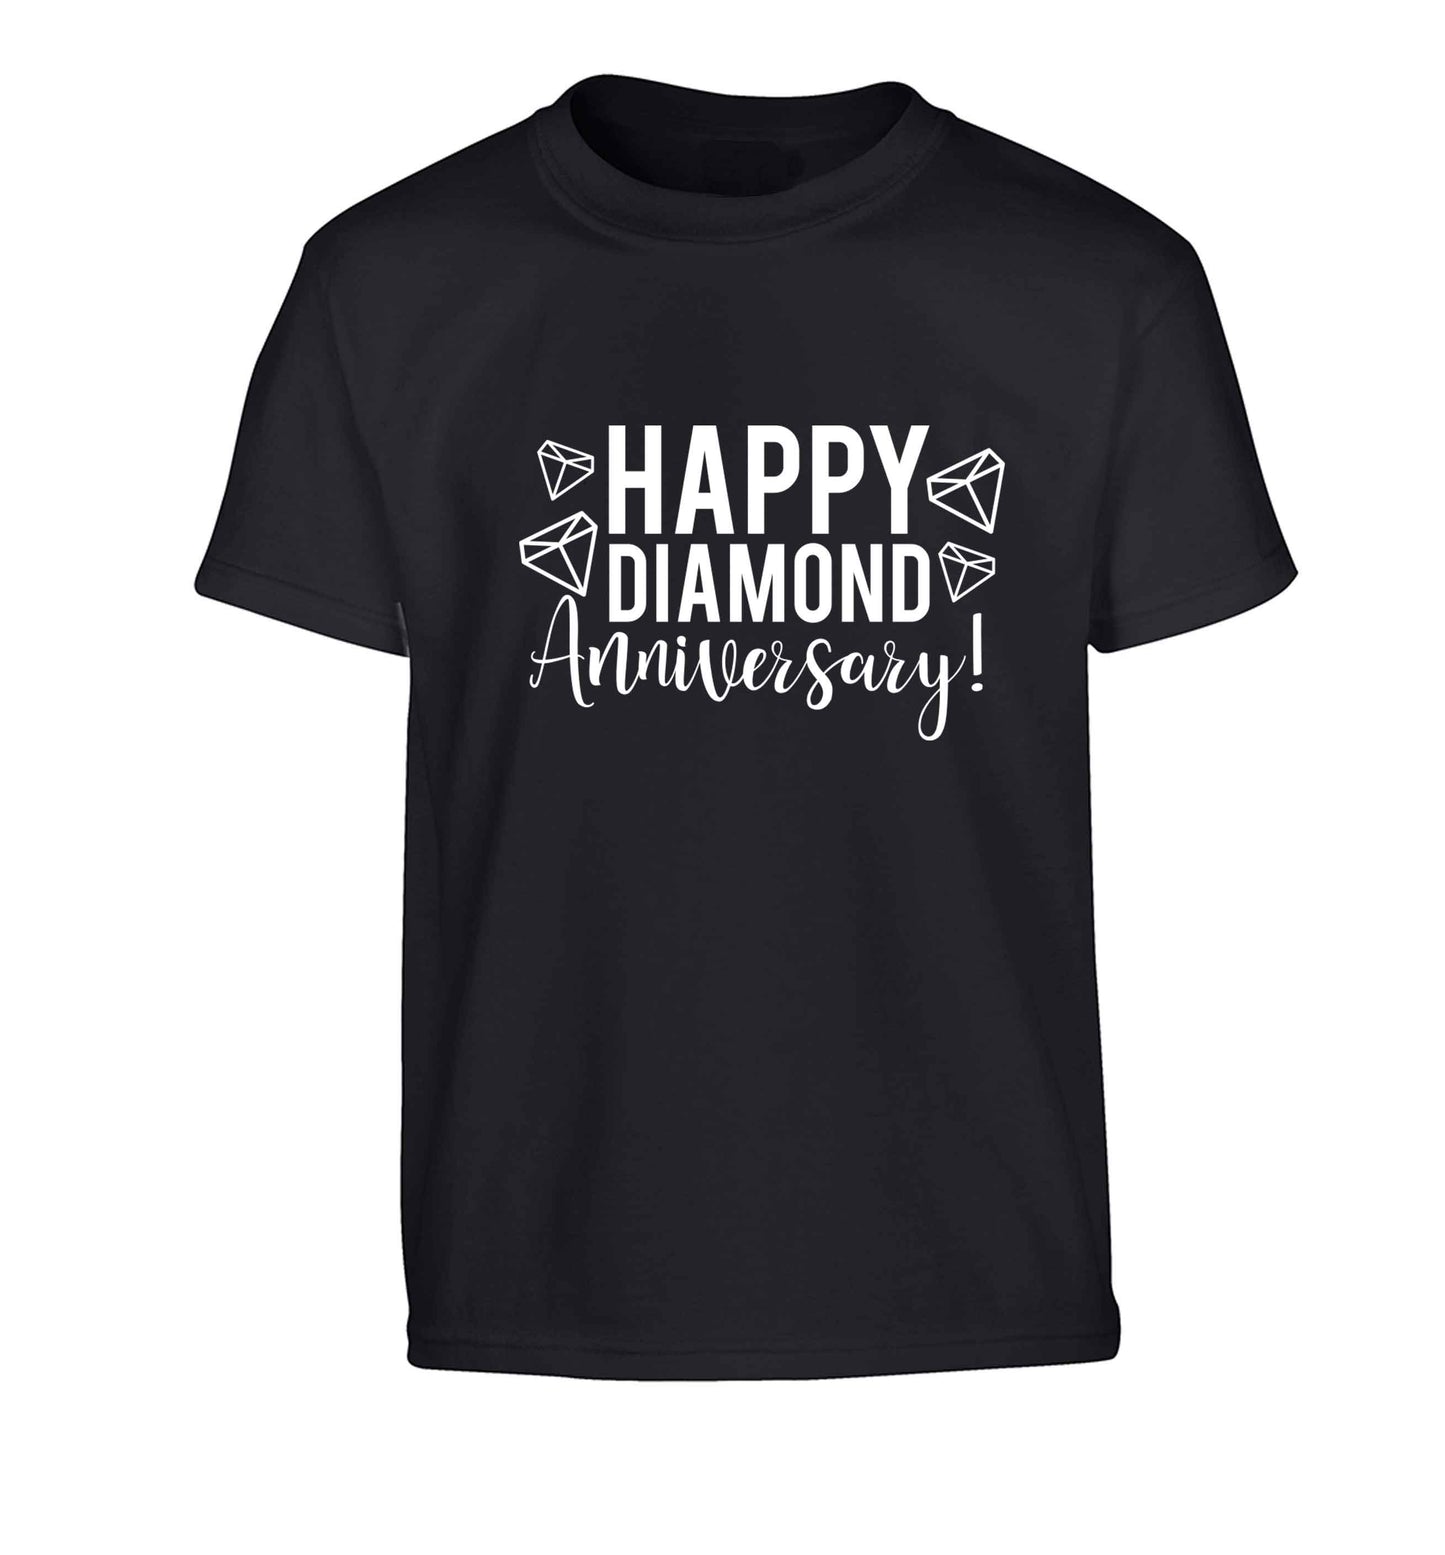 Happy diamond anniversary! Children's black Tshirt 12-13 Years